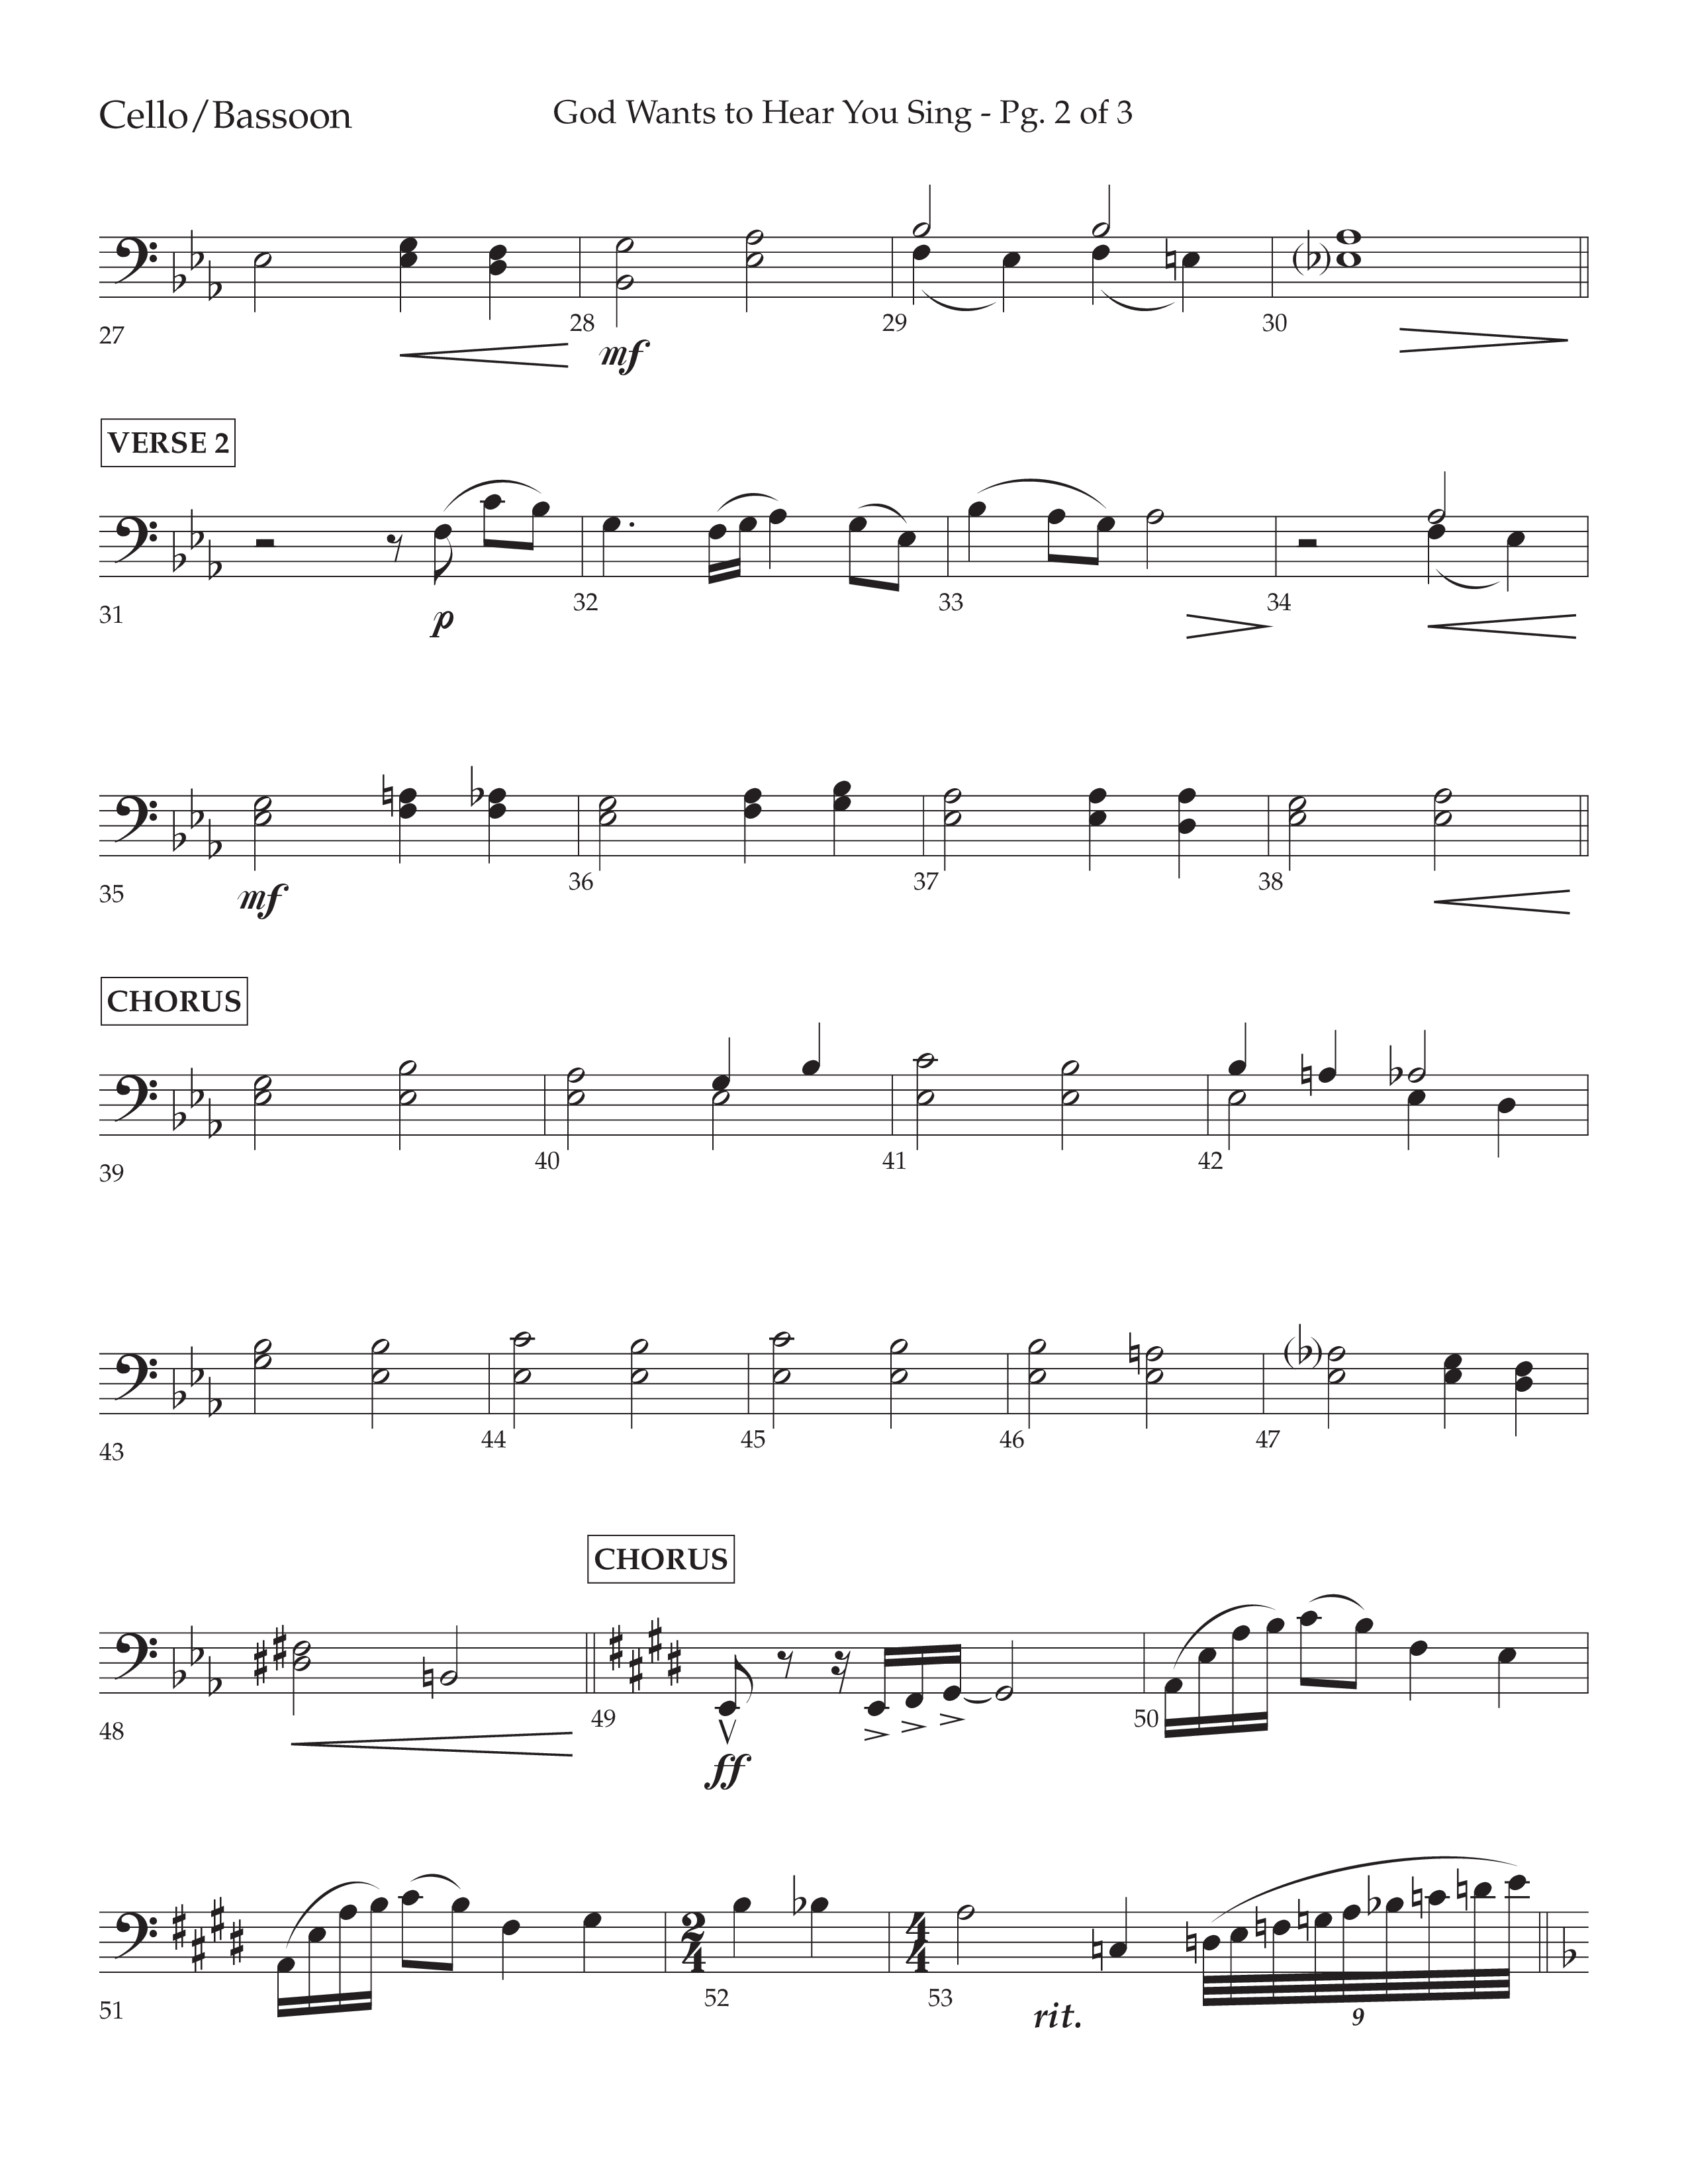 God Wants To Hear You Sing (Choral Anthem SATB) Cello (Lifeway Choral / Arr. Bradley Knight)